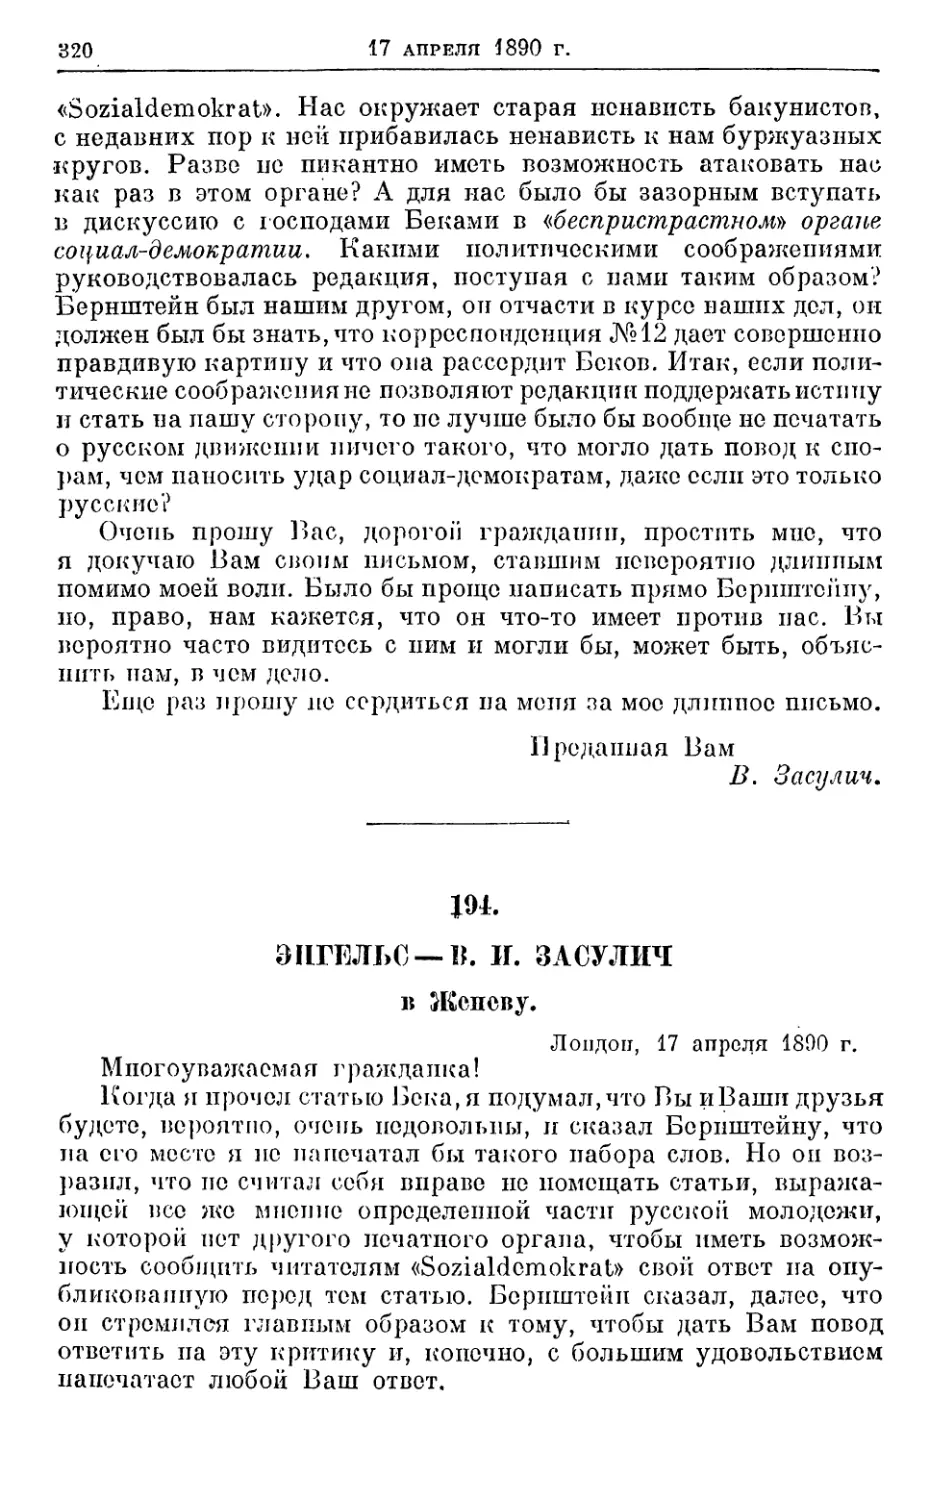 194. Энгельс — В. И. Засулич, 17 апреля 1890г